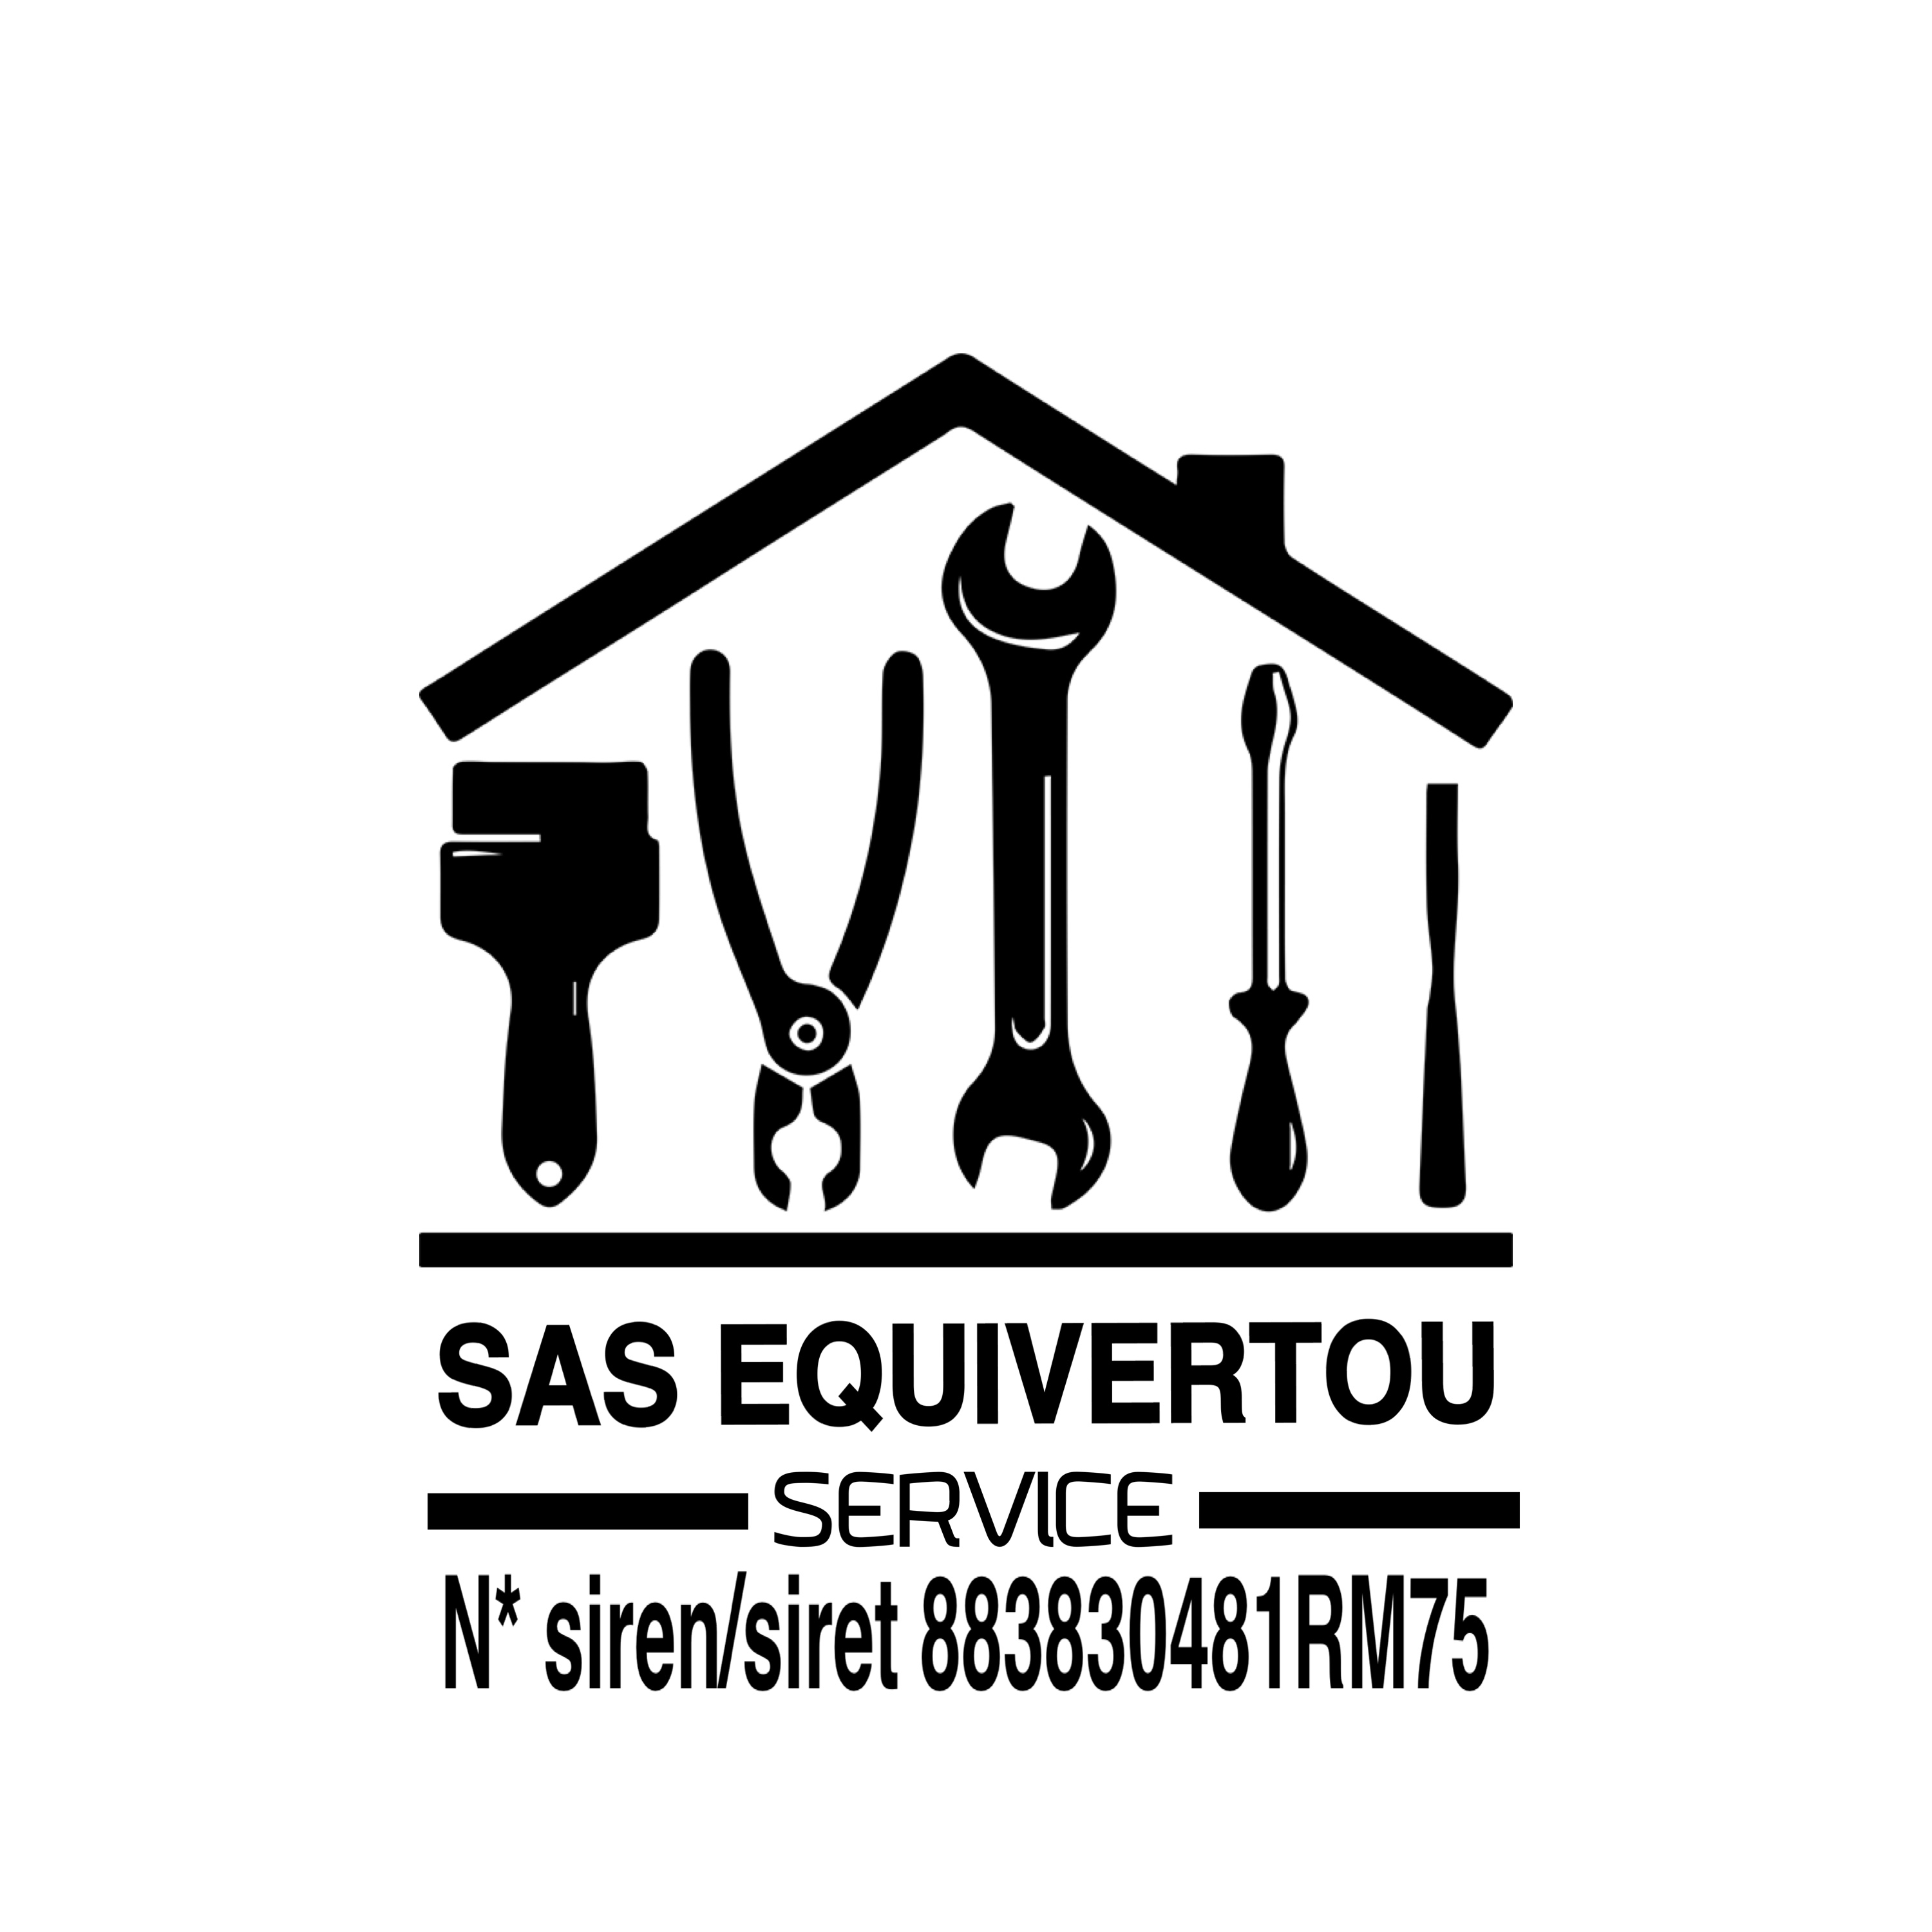 SAS EQUIVERTOU Services